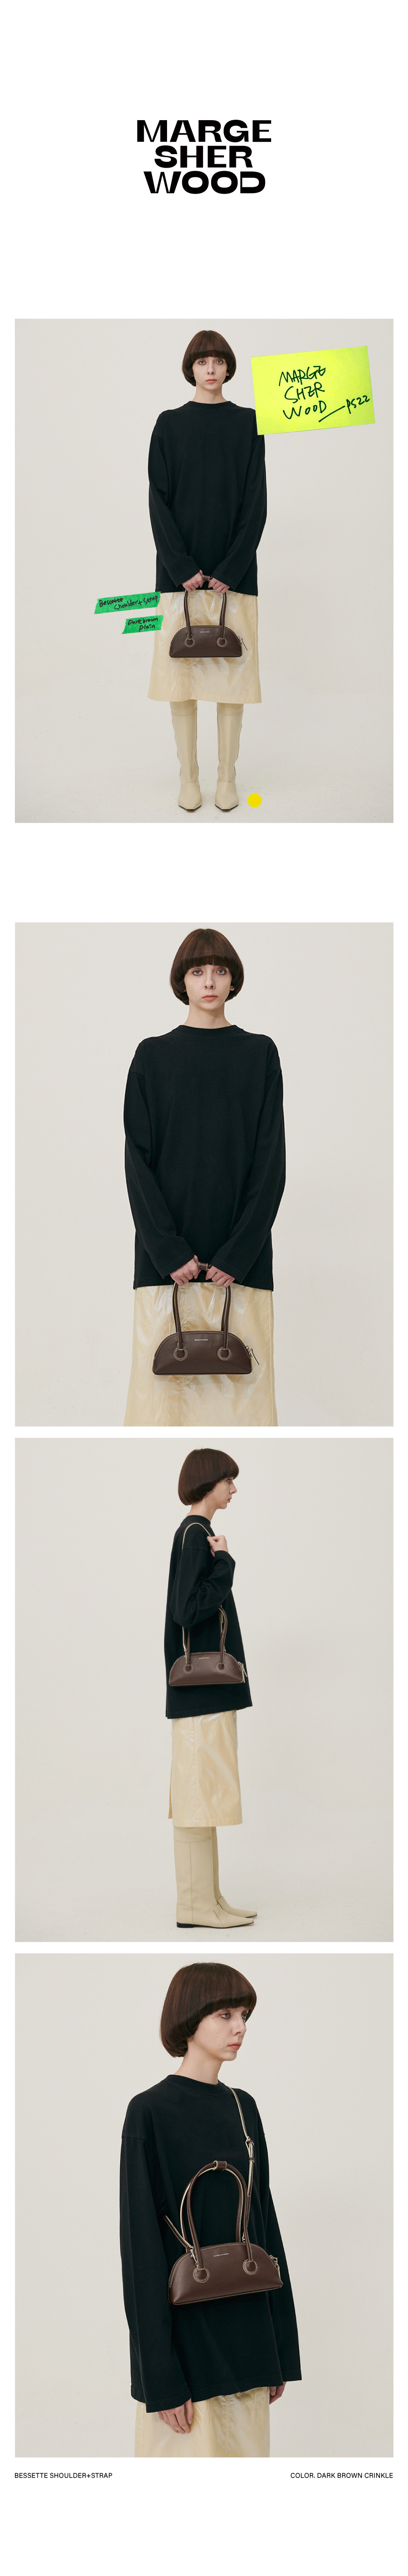 Bessette Shoulder Bag - Dark Brown Box